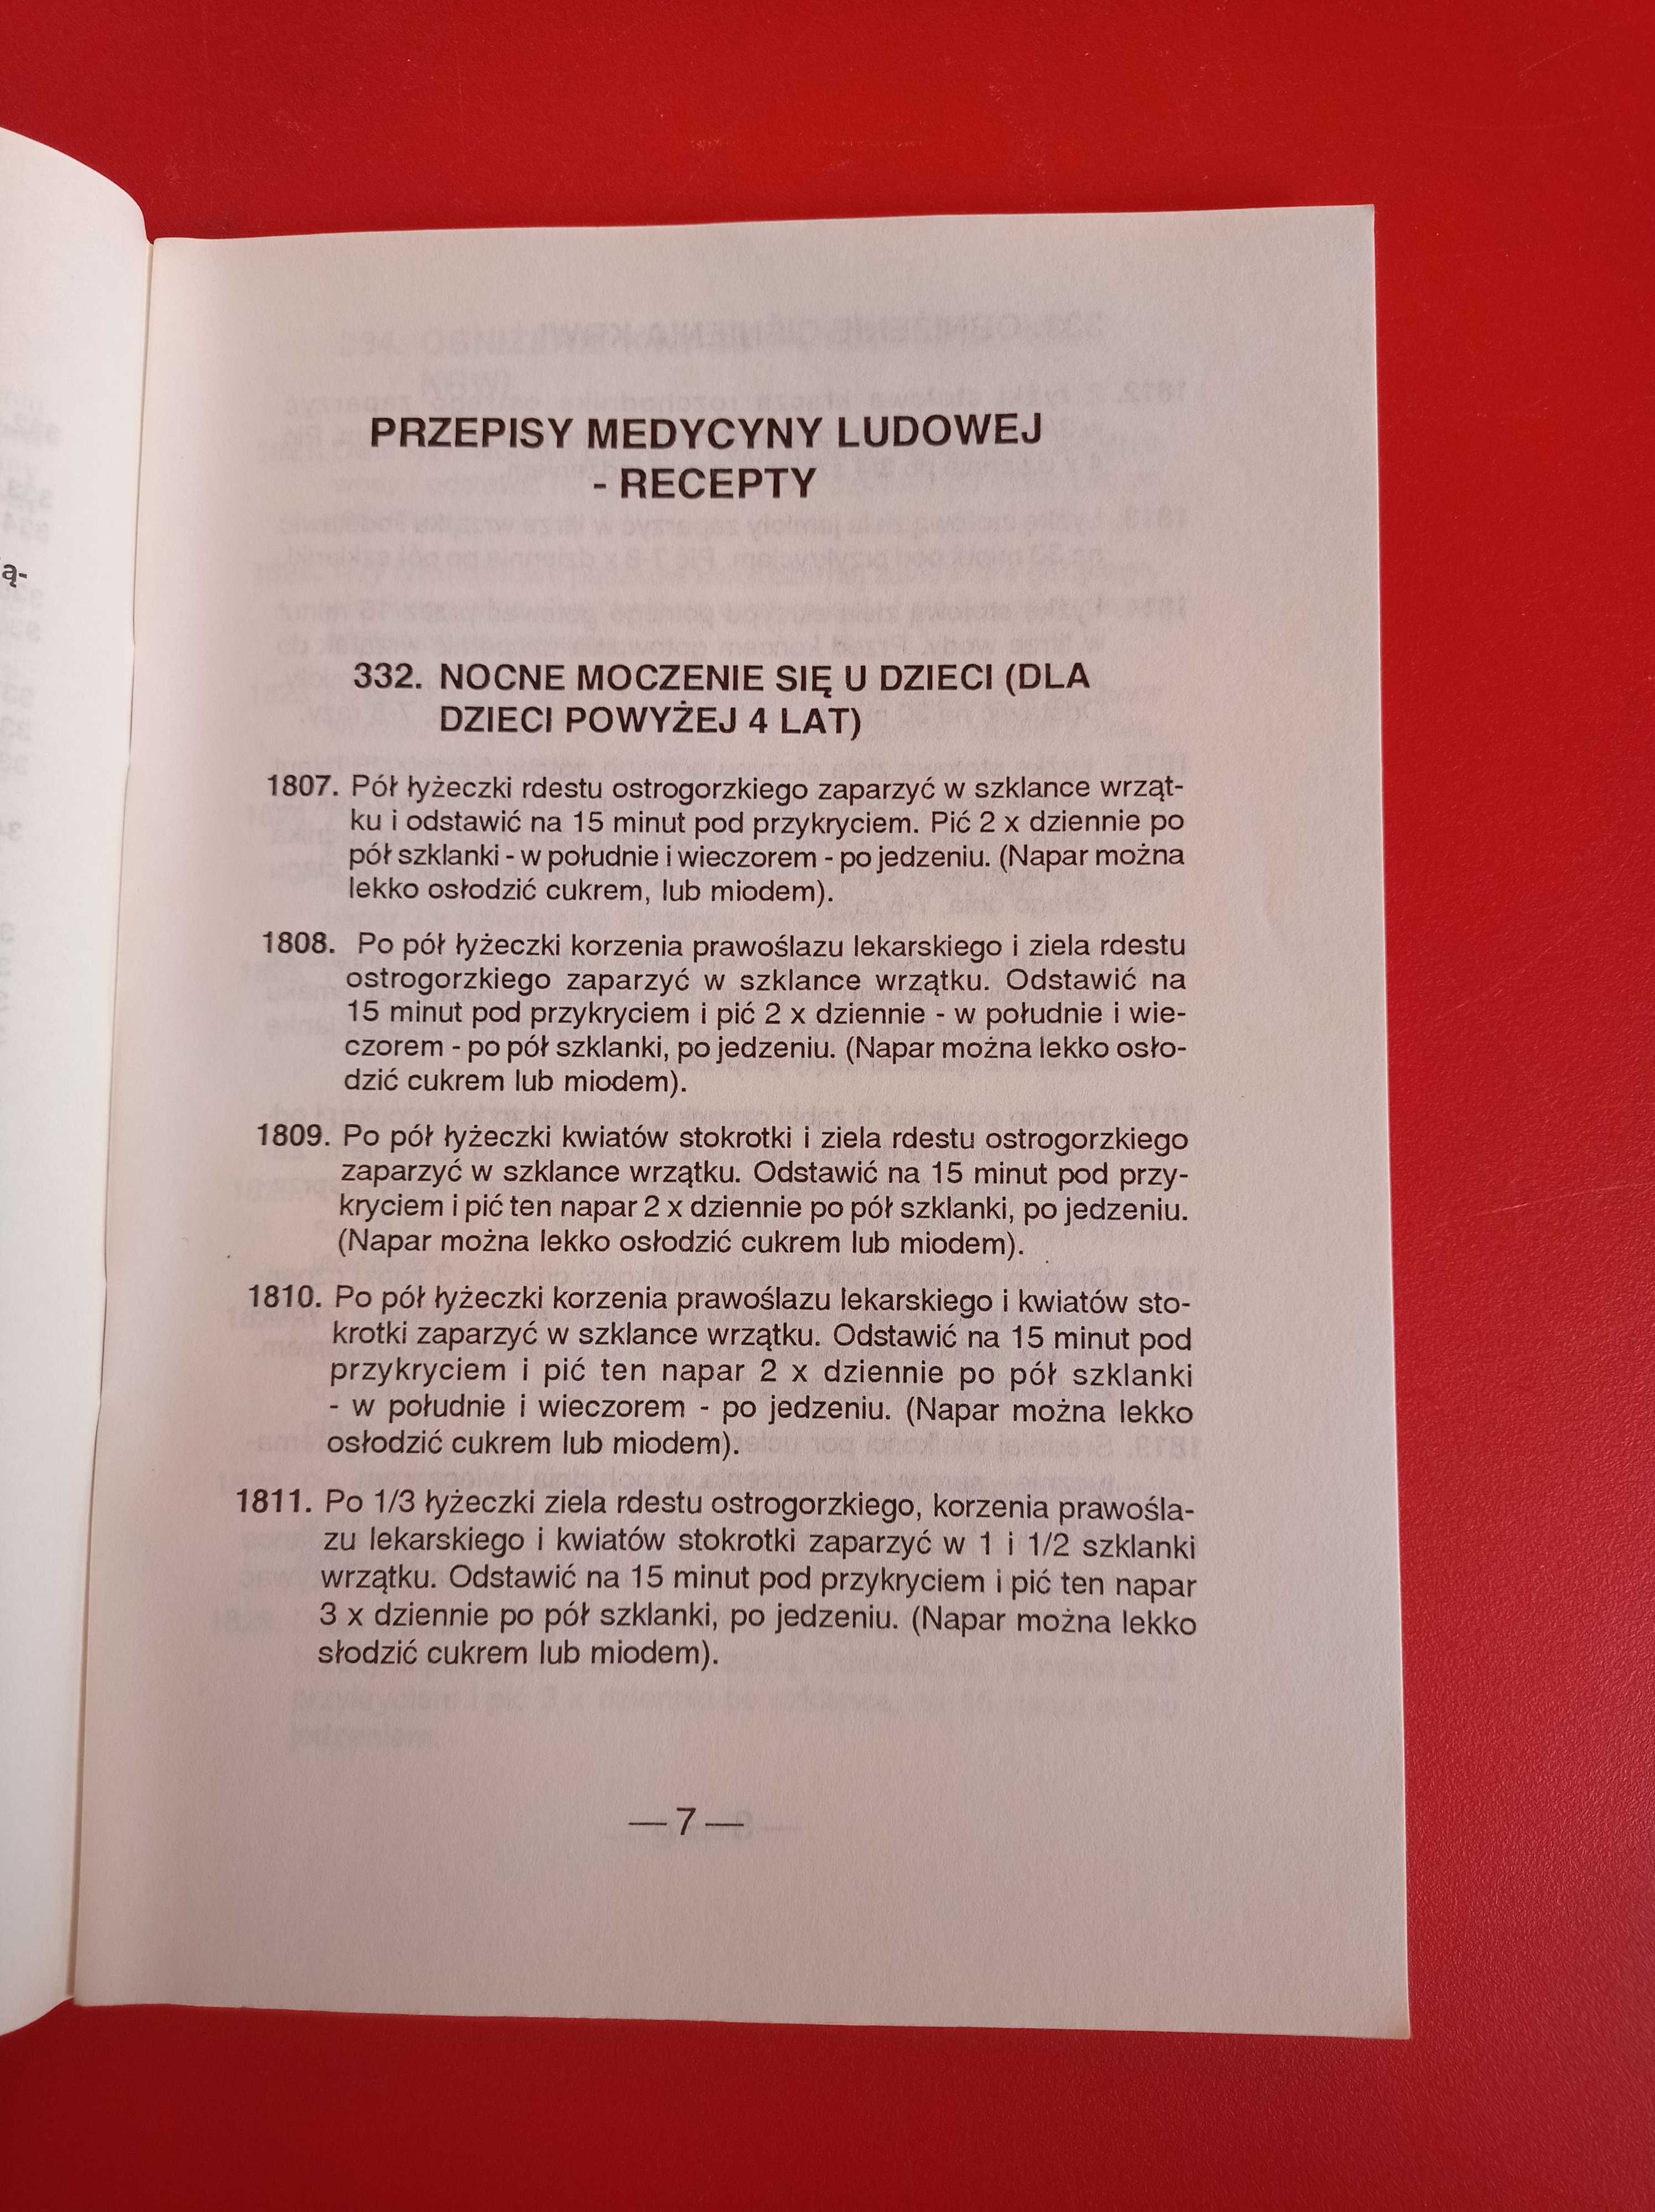 Przepisy medycyny ludowej 7/94 XI, 7/1994, miesięcznik zdrowia